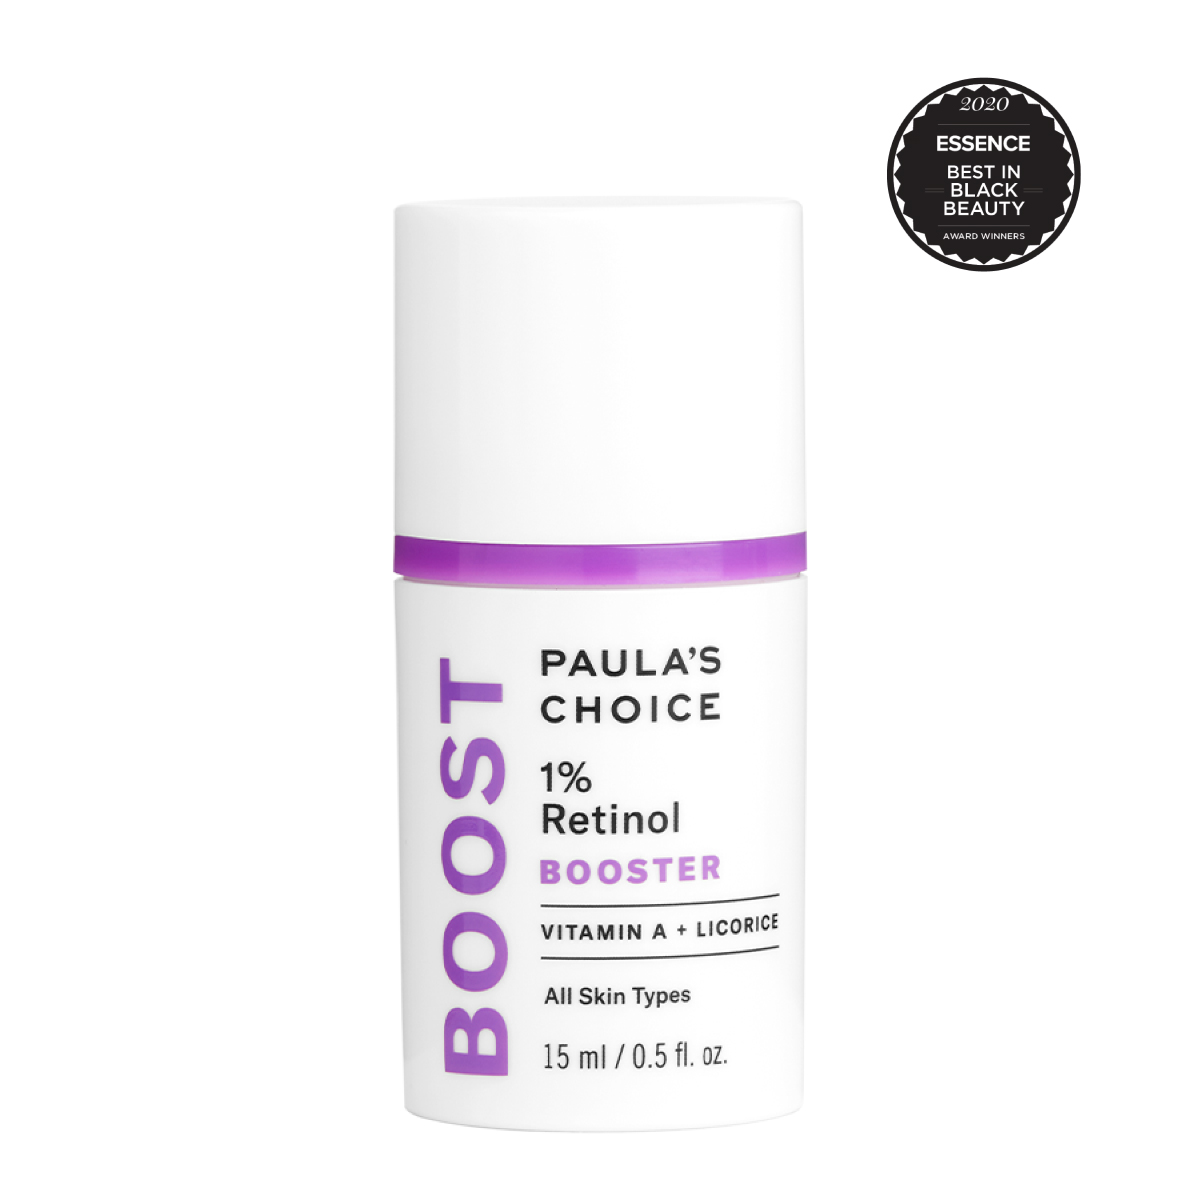 Tinh chất giảm nám và chống lão hóa Paula’s Choice 1% Retinol Booster